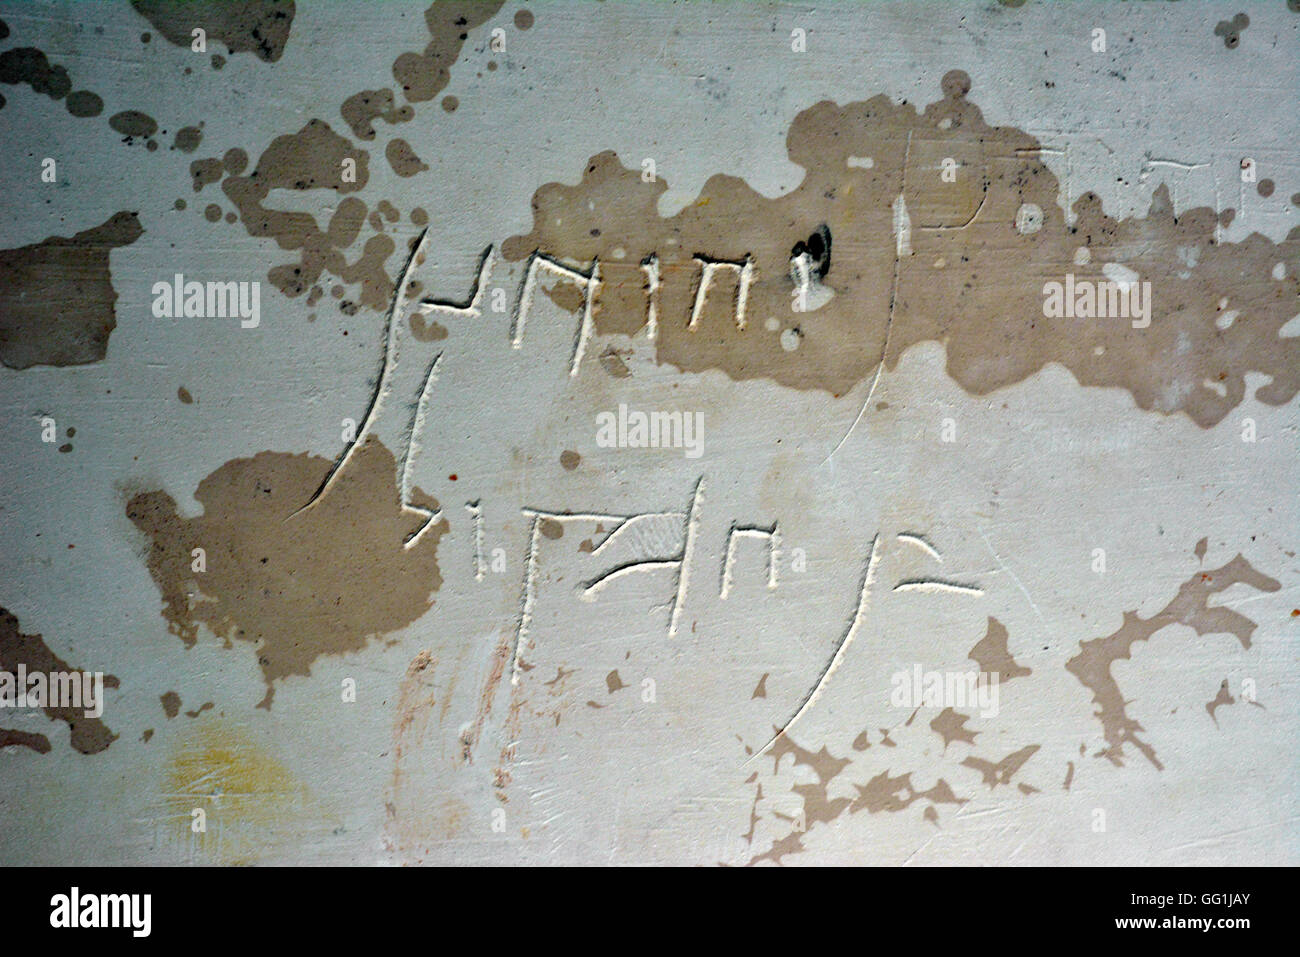 5381. Stein Beinhaus in eine jüdische Grabstätte in Givat HaMivtar in der Nähe von Jerusalem gefunden. Die hebräische Inschrift auf dem Beinhaus lautet: "Jehoh Stockfoto